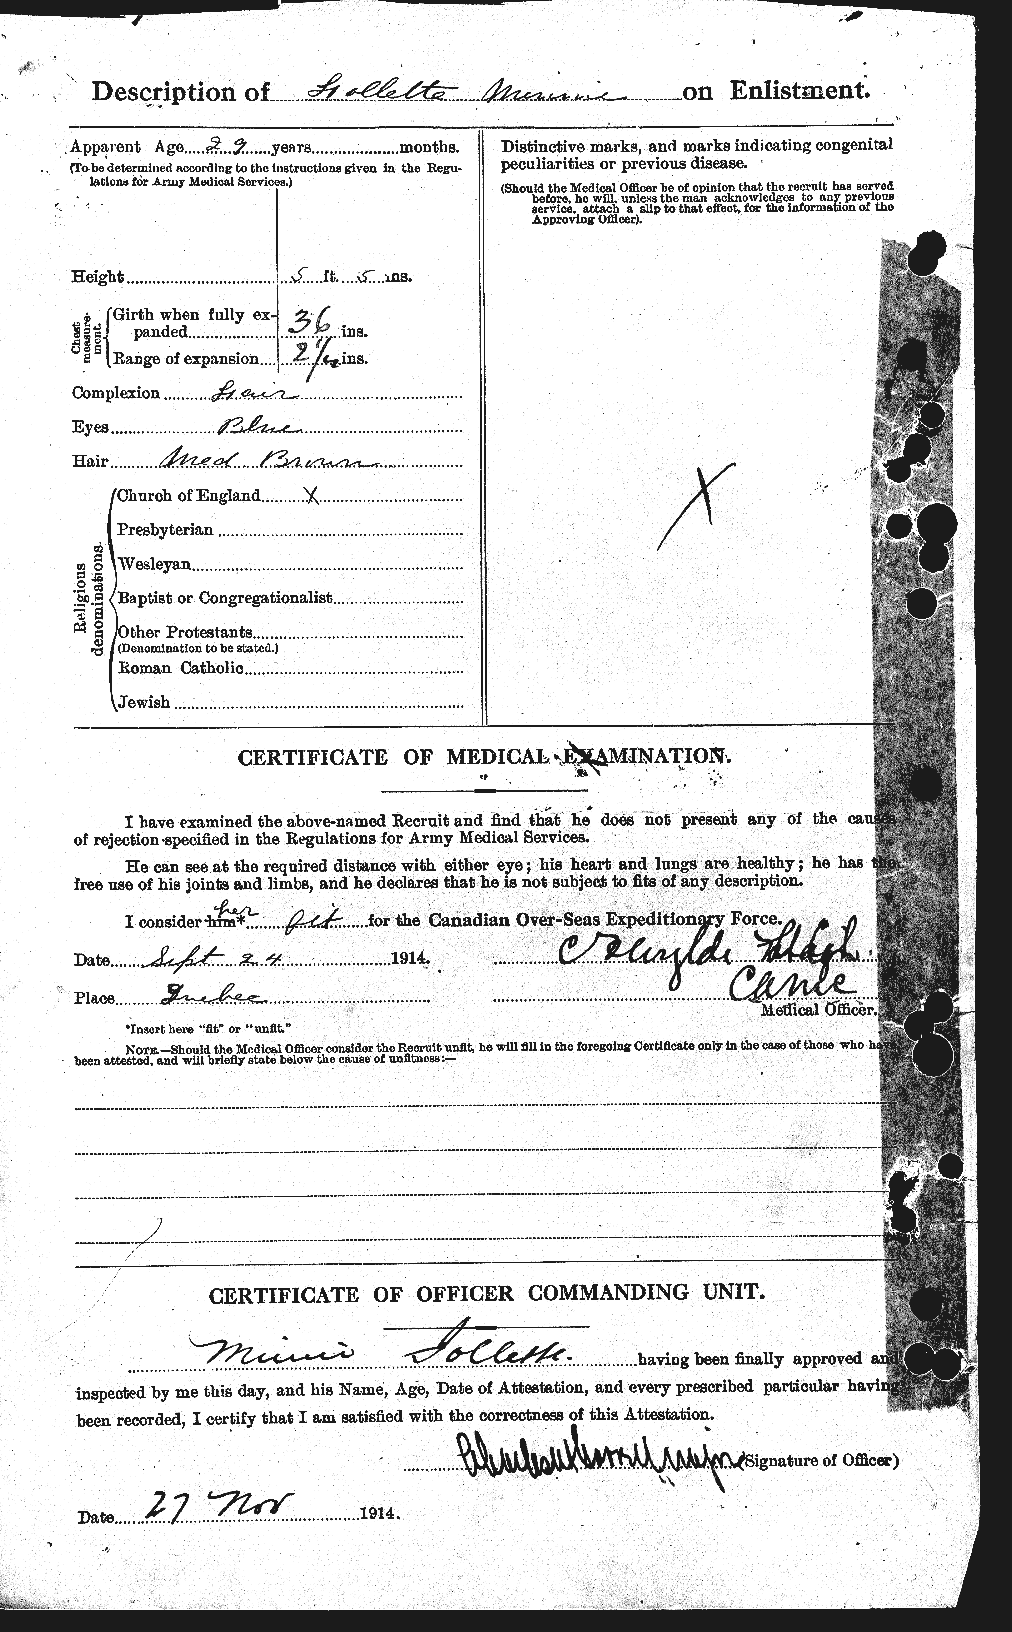 Dossiers du Personnel de la Première Guerre mondiale - CEC 327697b